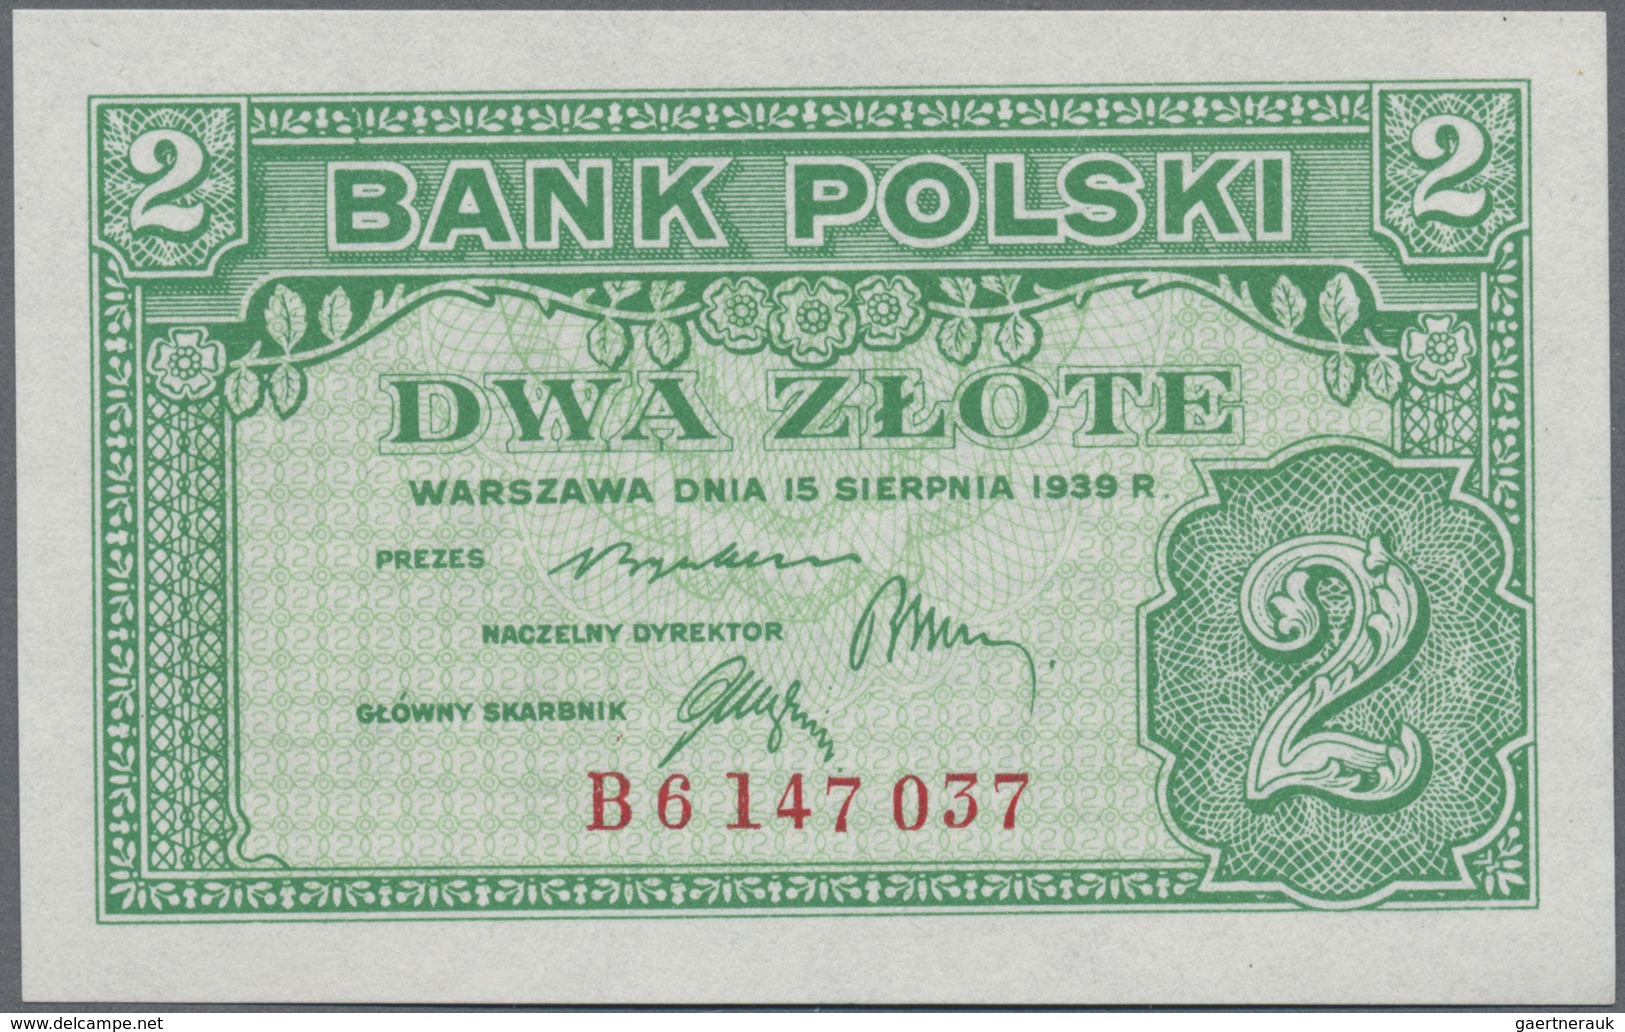 Poland / Polen: 2 Zlote 1939 Remainder, P.80r In UNC Condition - Poland